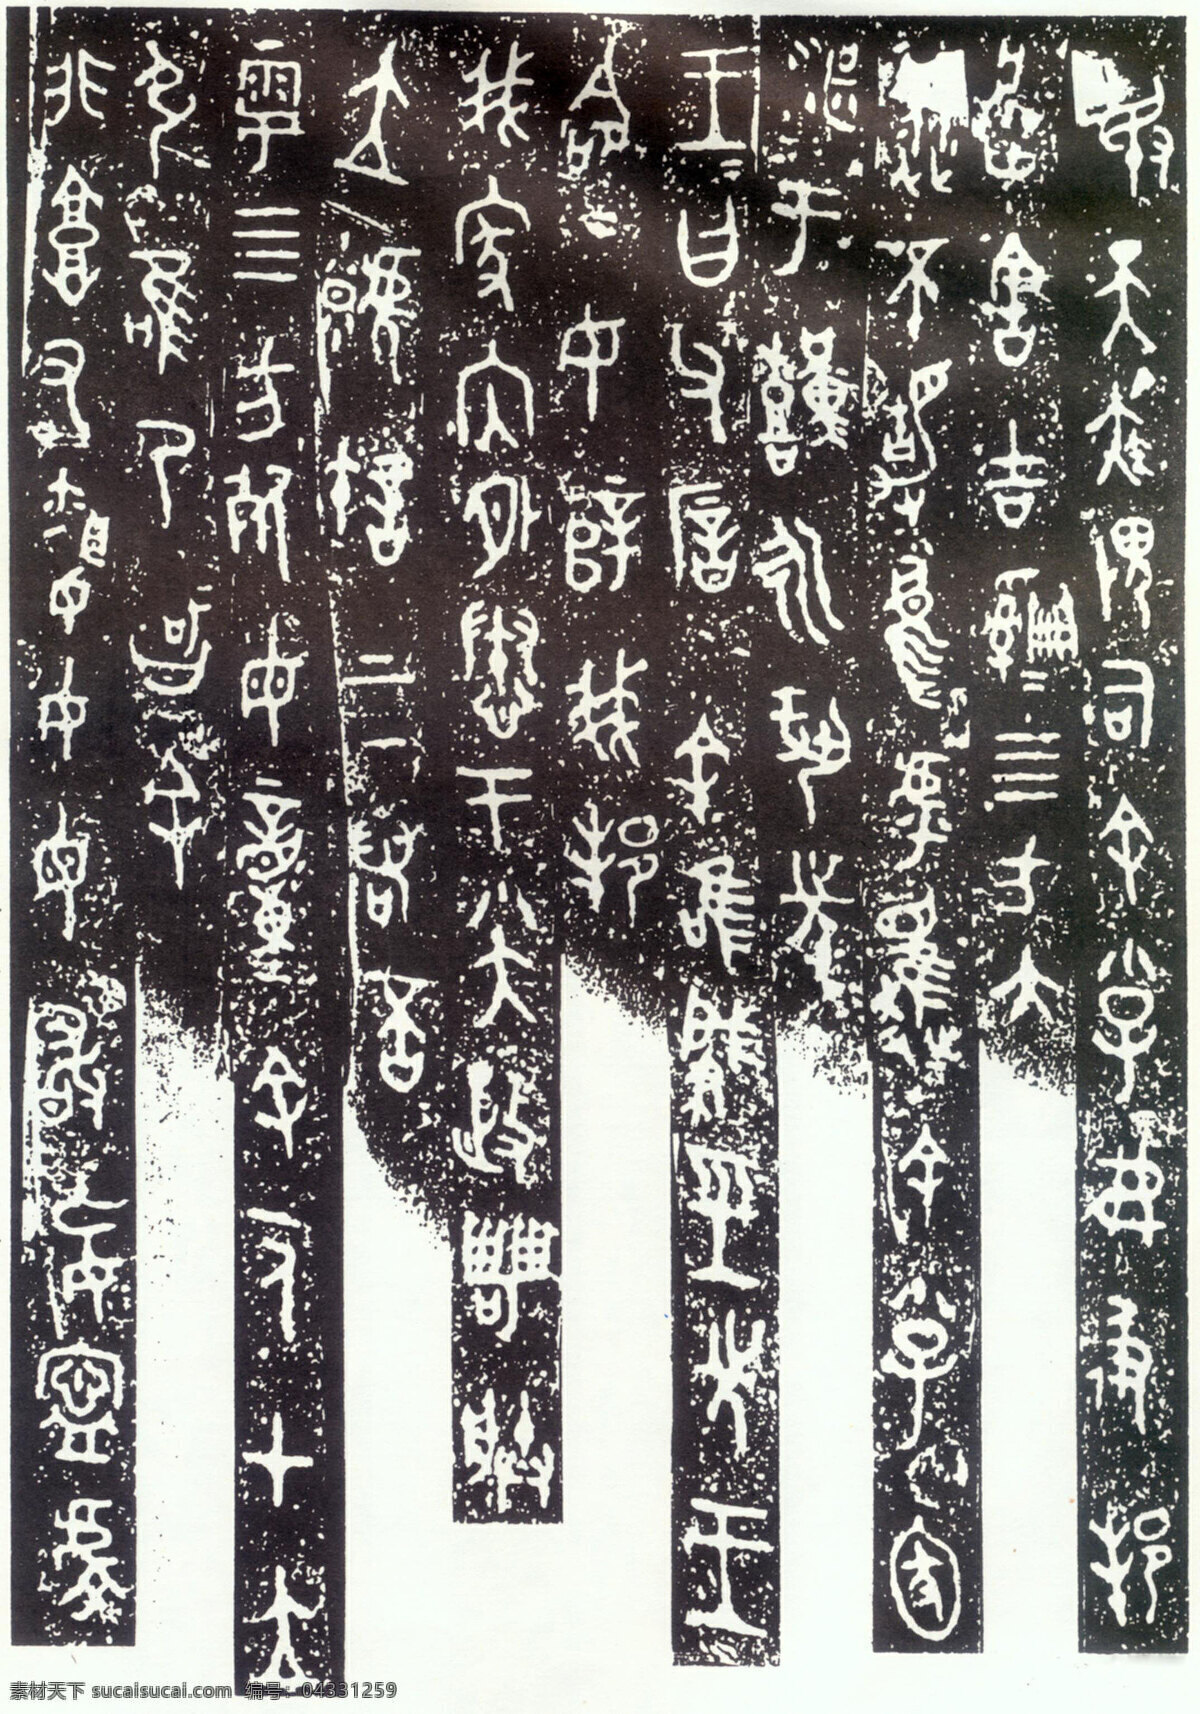 毛公鼎铭文 古汉字 书法0016 书法 设计素材 古汉字篇 书法世界 书画美术 白色